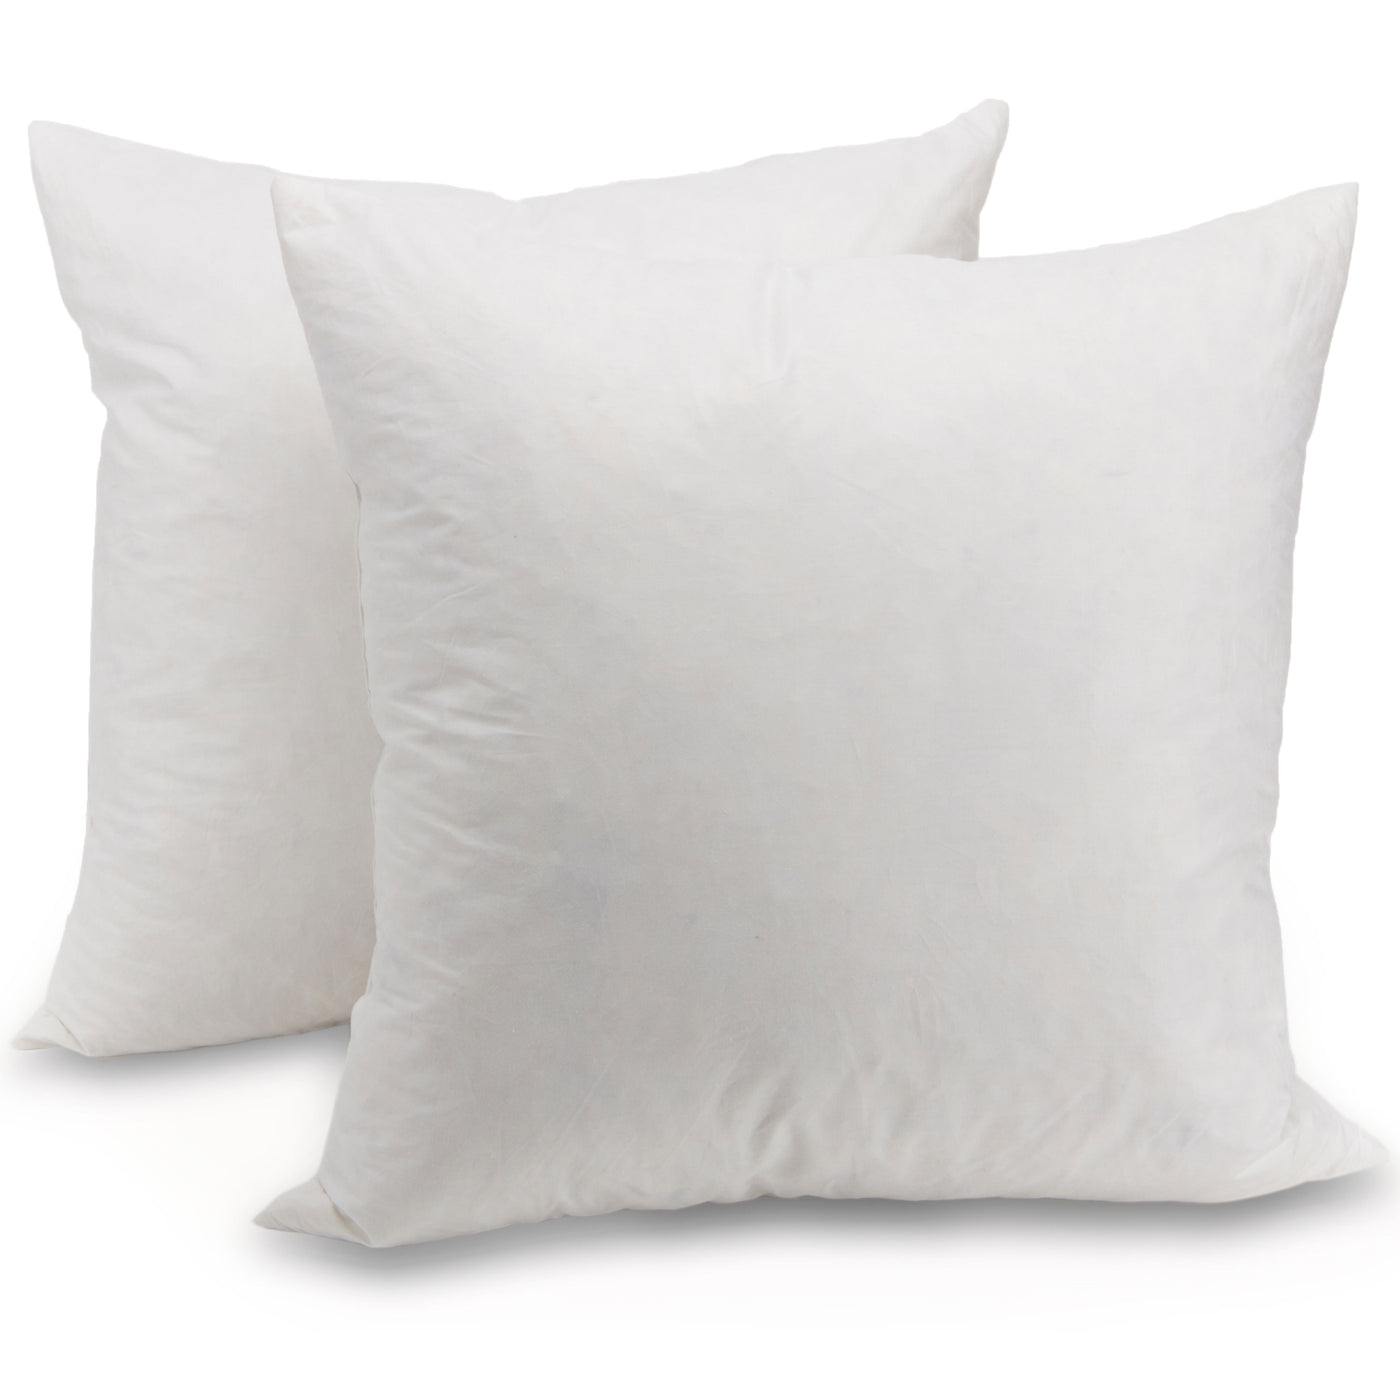 Extra Firm Pillow Insert 18x18 Set Of 4